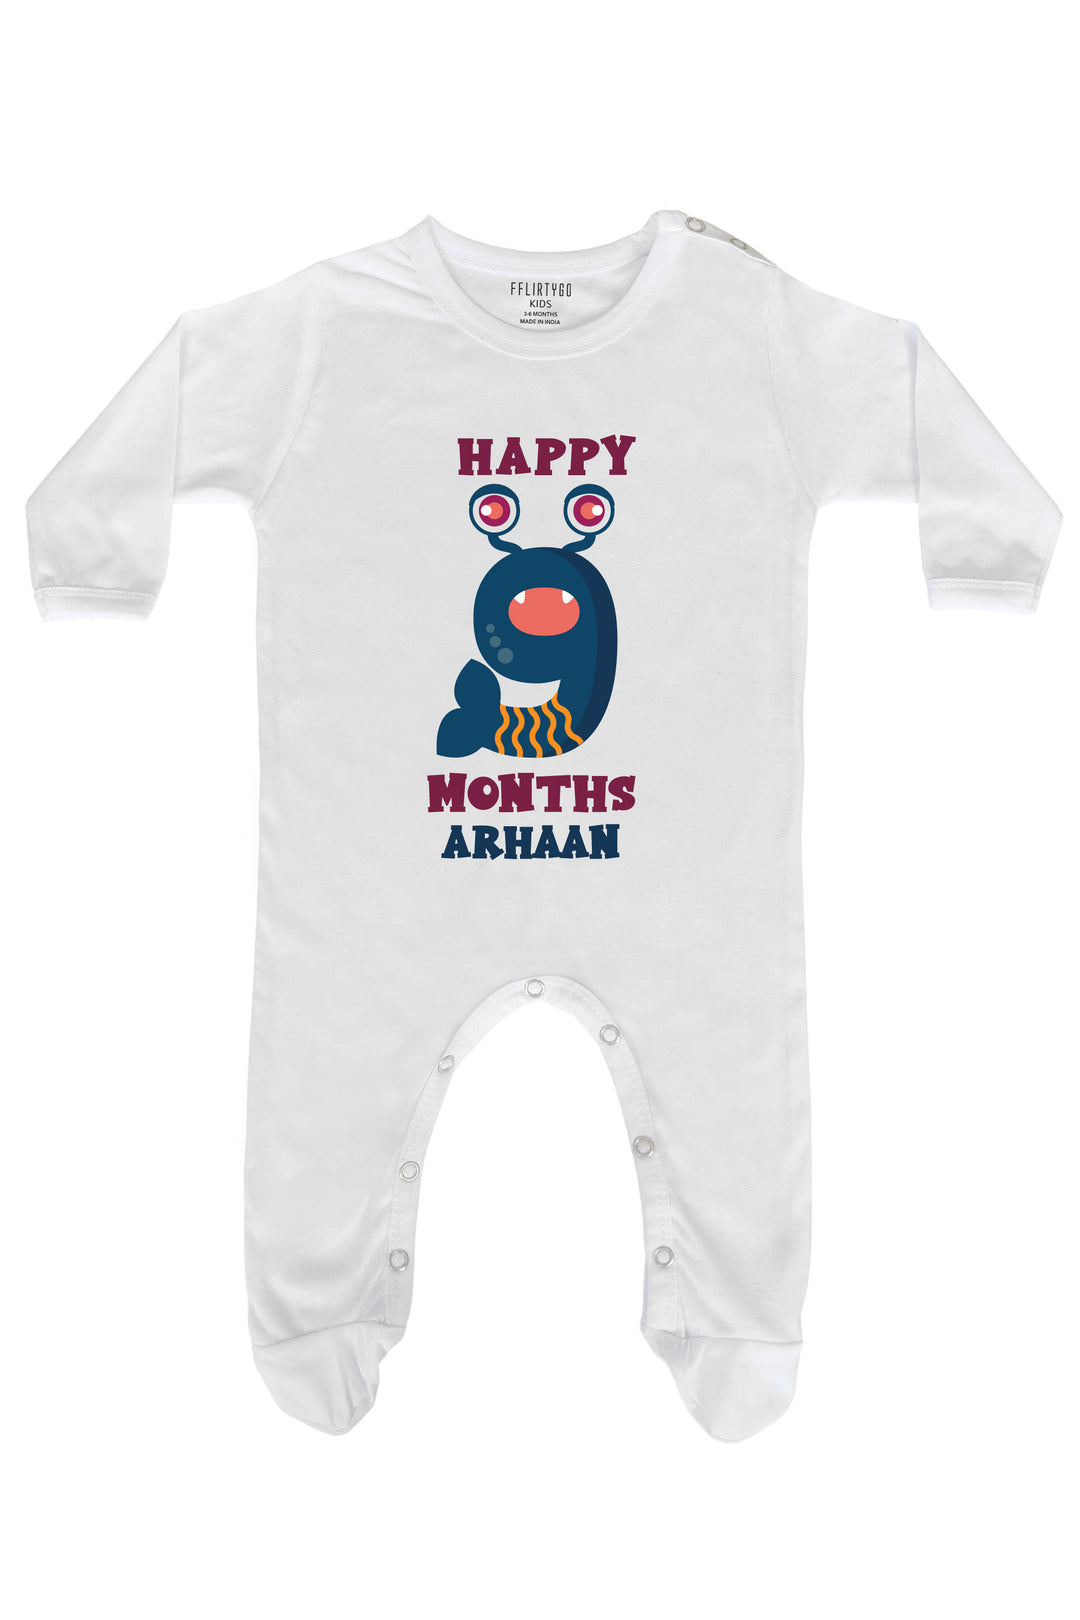 Nine Month Birthday Baby Romper | Onesies w/ Custom Name